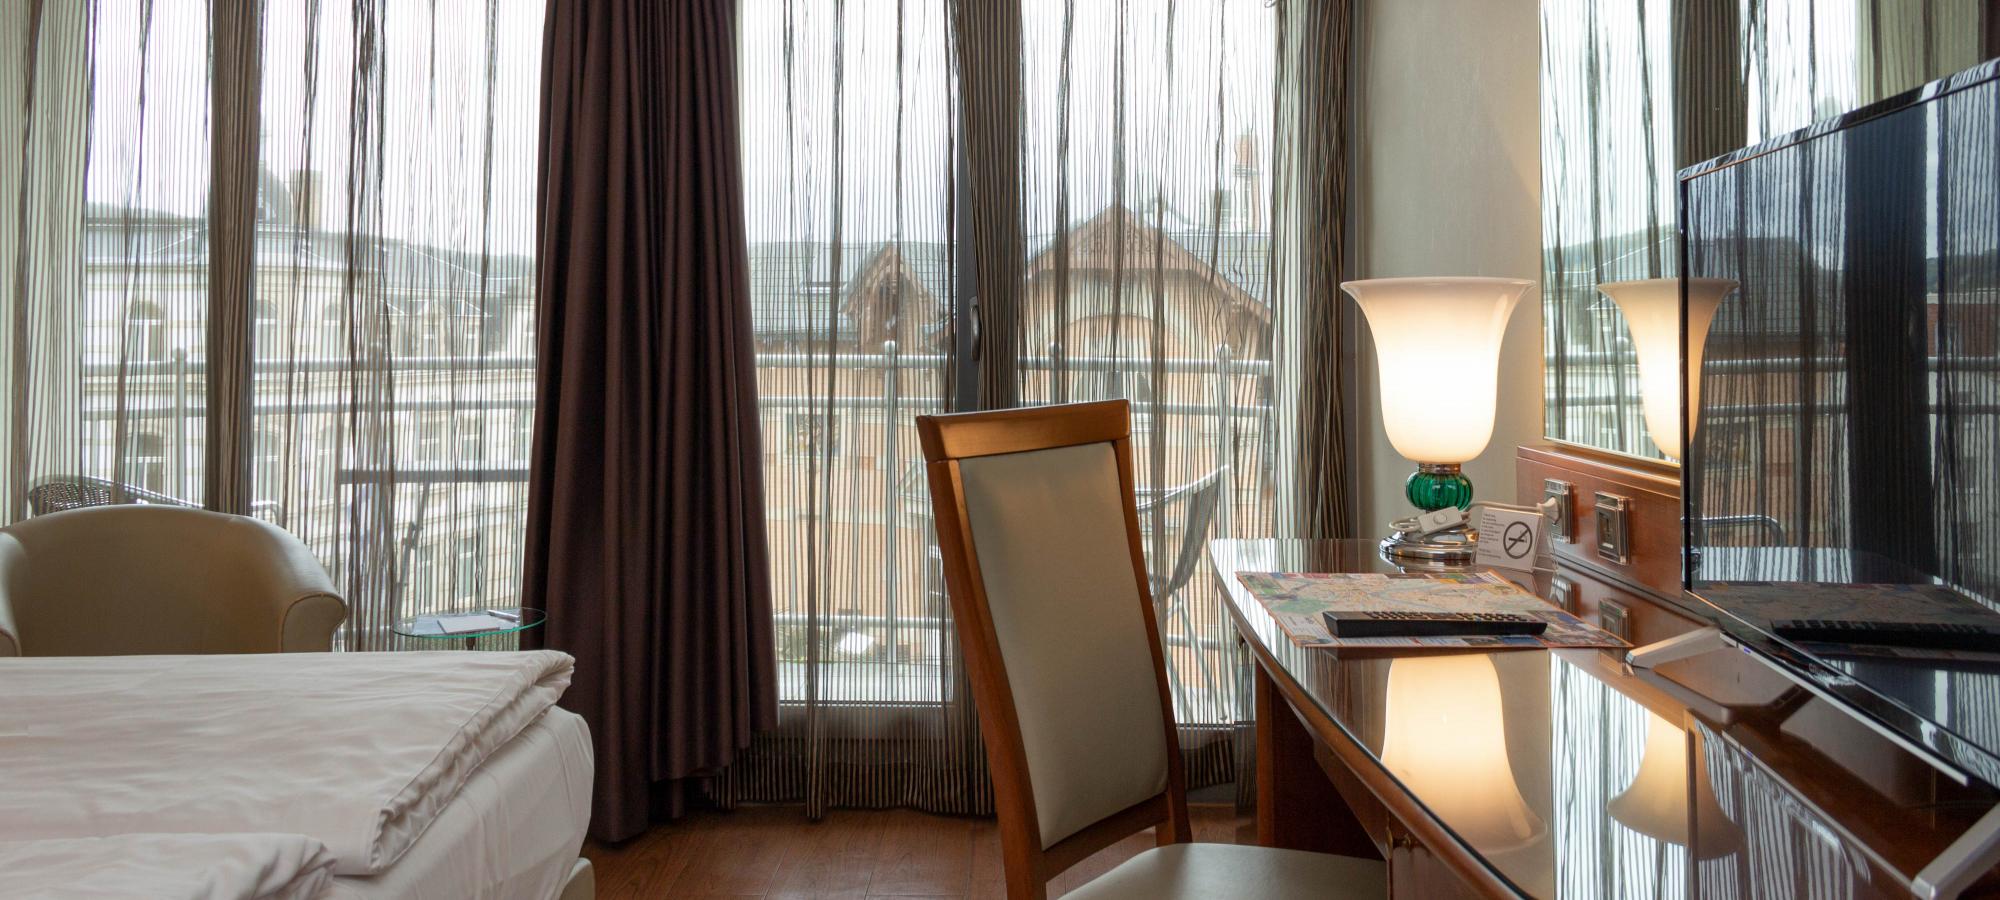 Doppelzimmer mit großzügigen, weißen Betten und Schreibtisch, mit einem cremefarbenen Sessel sowie mit Blick auf bodentiefe Fenster mit Balkon und einer Aussicht auf das Villenviertel Blasewitz in Dresden